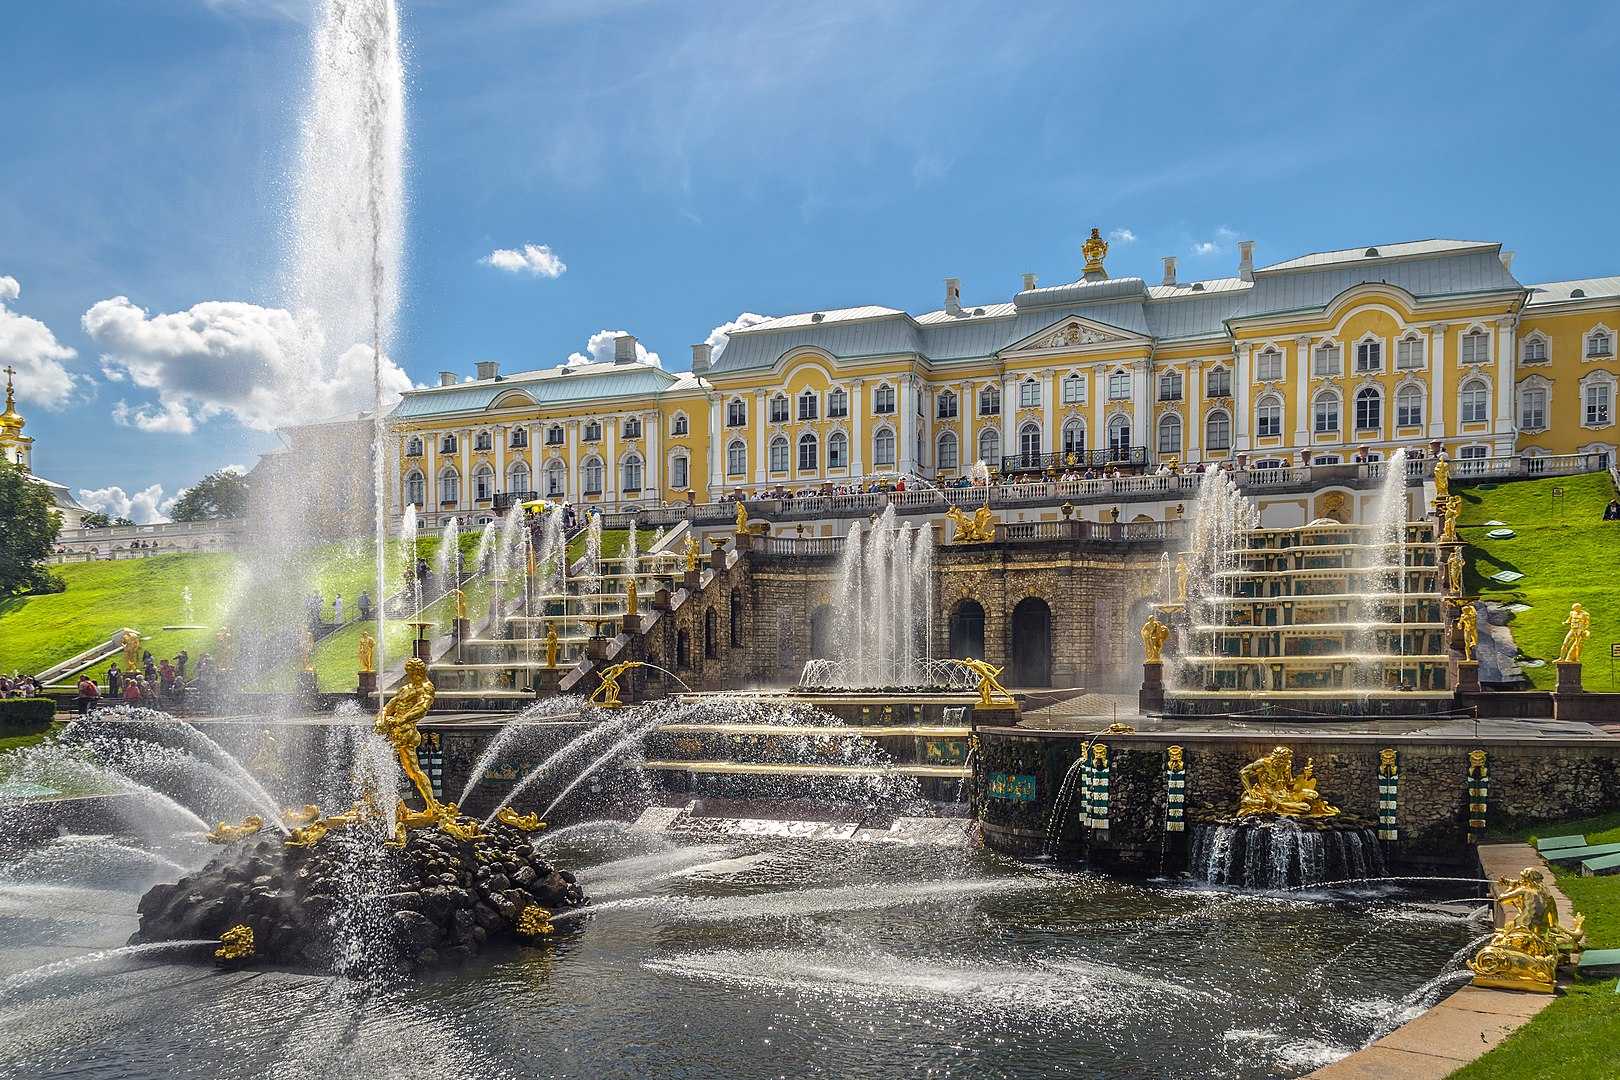 Большой Петергофский дворец Большой дворец Петергоф - величественный и изысканный дворец, являющийся одним из самых известных и посещаемых в Петербурге Сегодня Большой Петергофский дворец является музеем